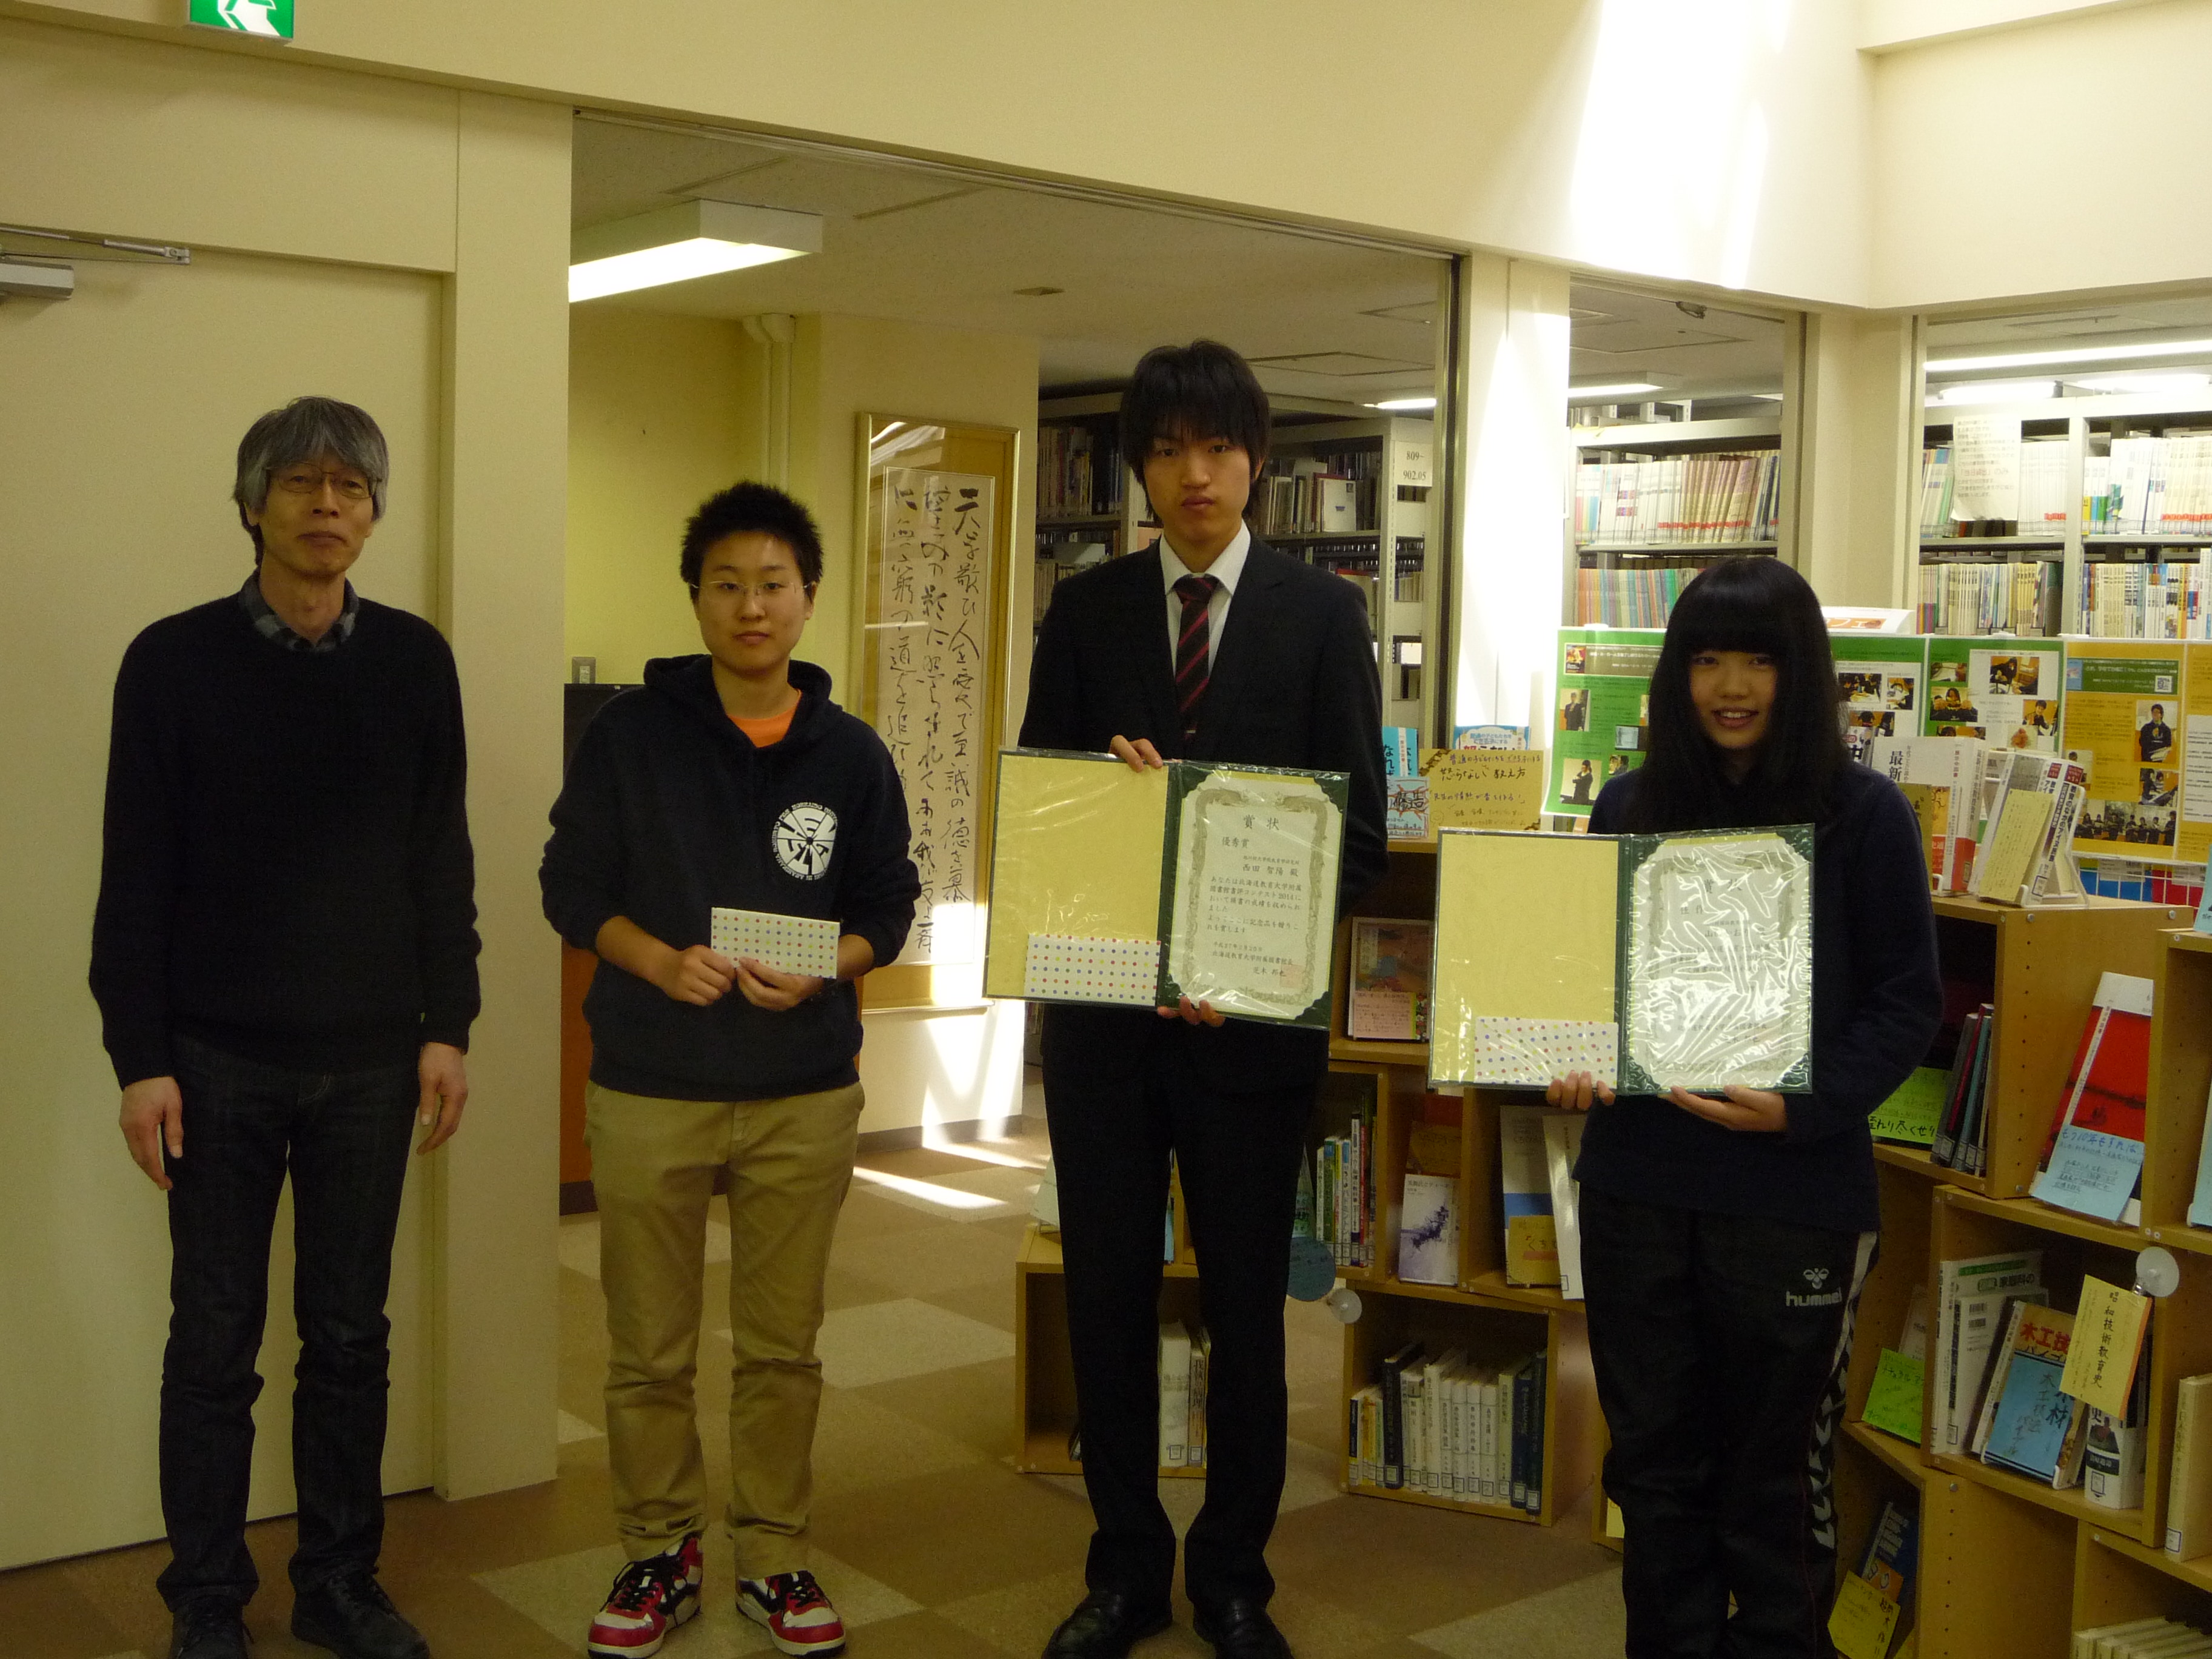 [全館] 「北海道教育大学図書館書評コンテスト2014」受賞作決定